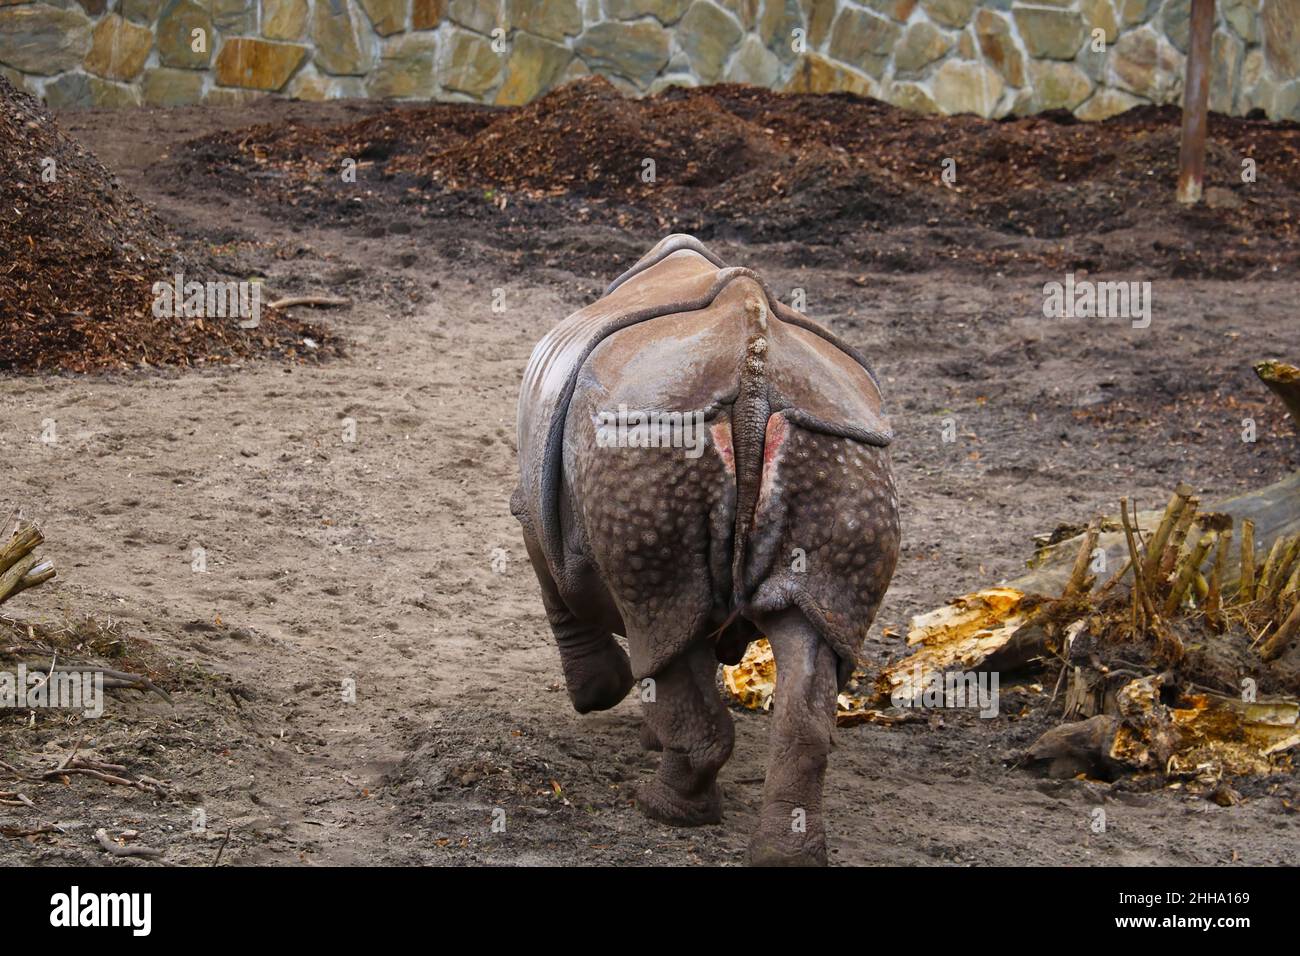 Nicht fokussiert. Rückansicht eines wanderenden Nashorns im Park Stockfoto